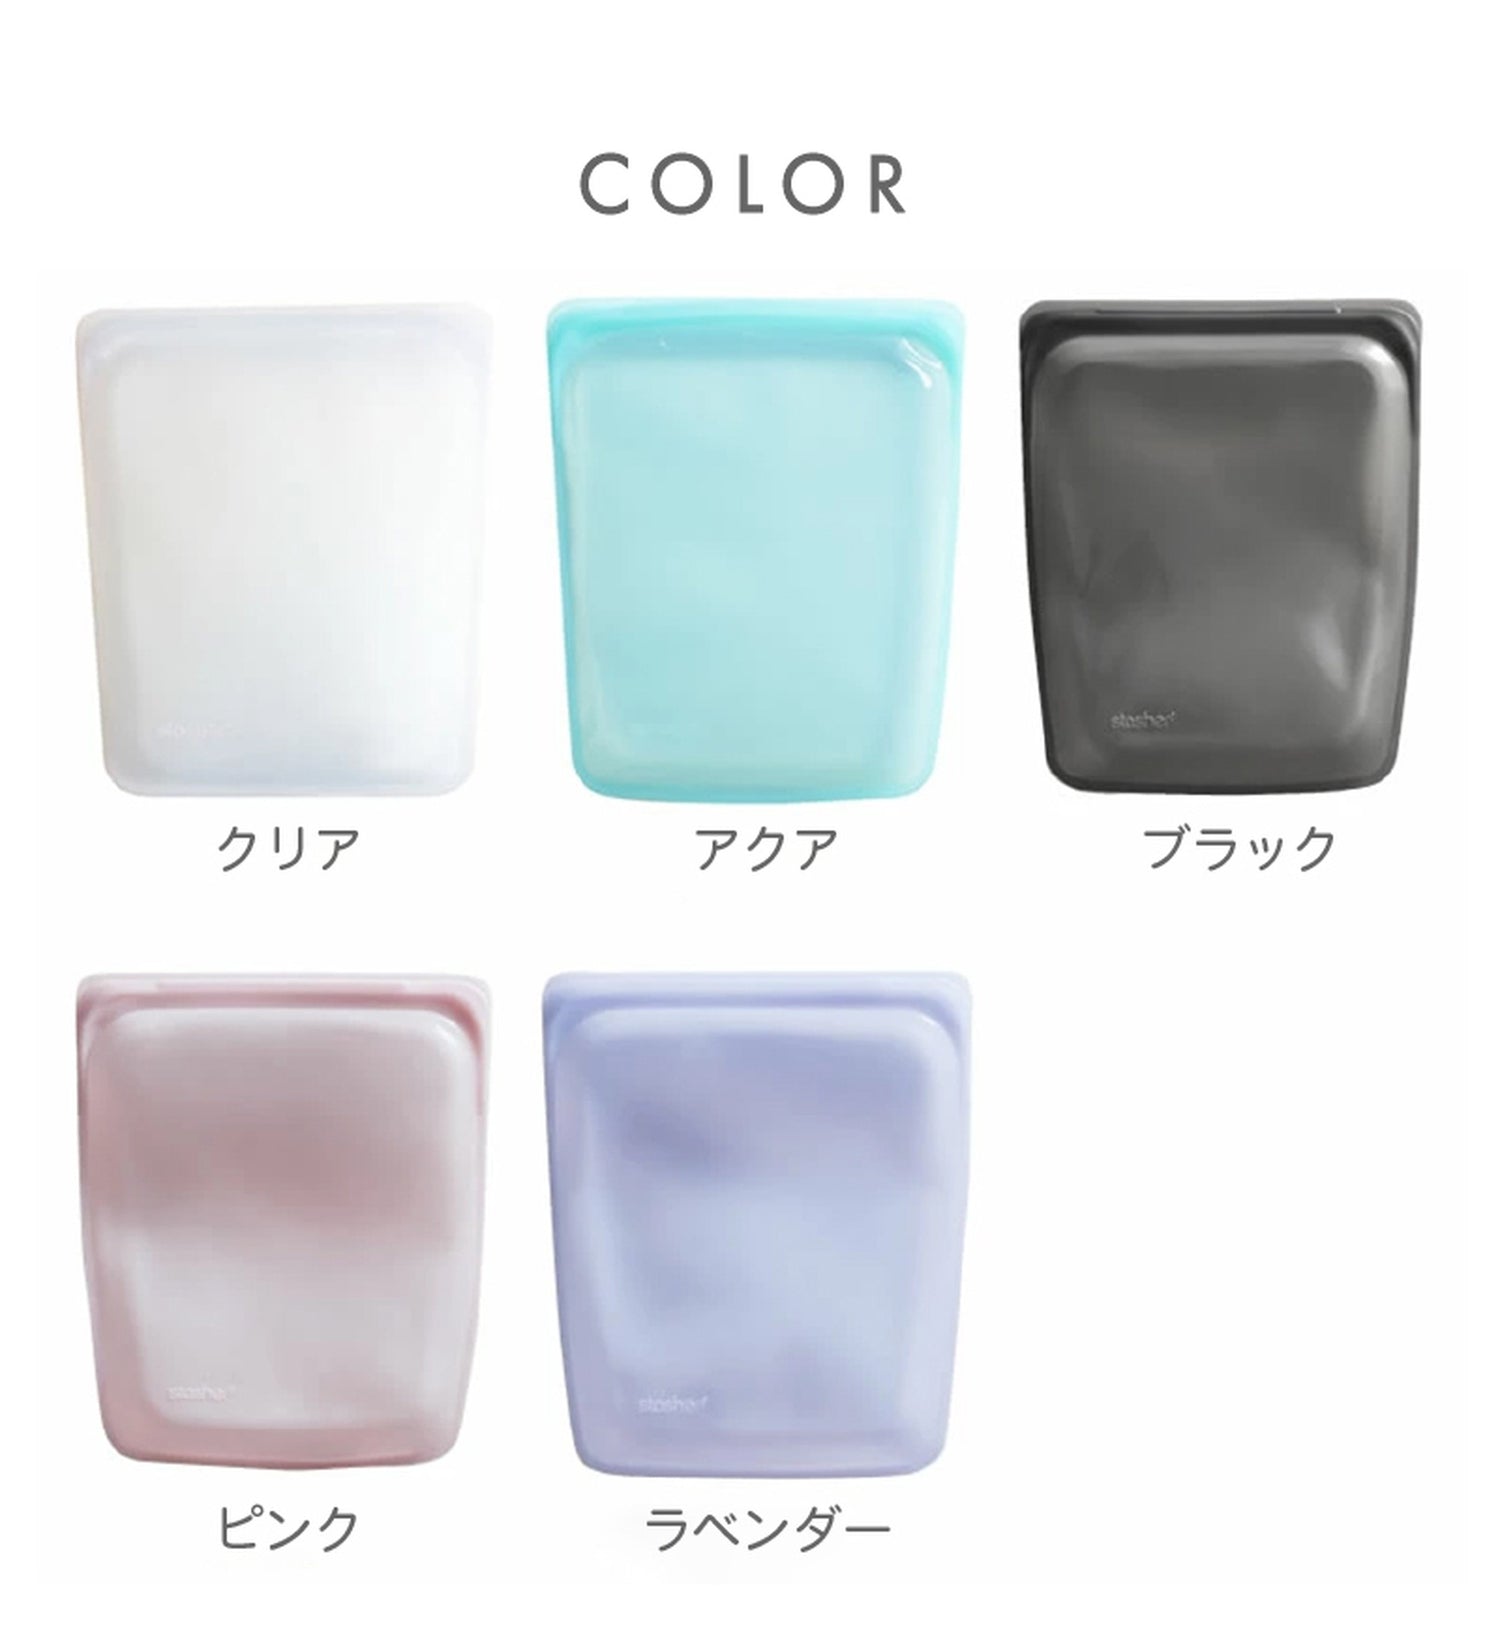 【2個セット】スタッシャー シリコンバッグ stasher 日本正規品 ハーフガロン Lサイズ 5色